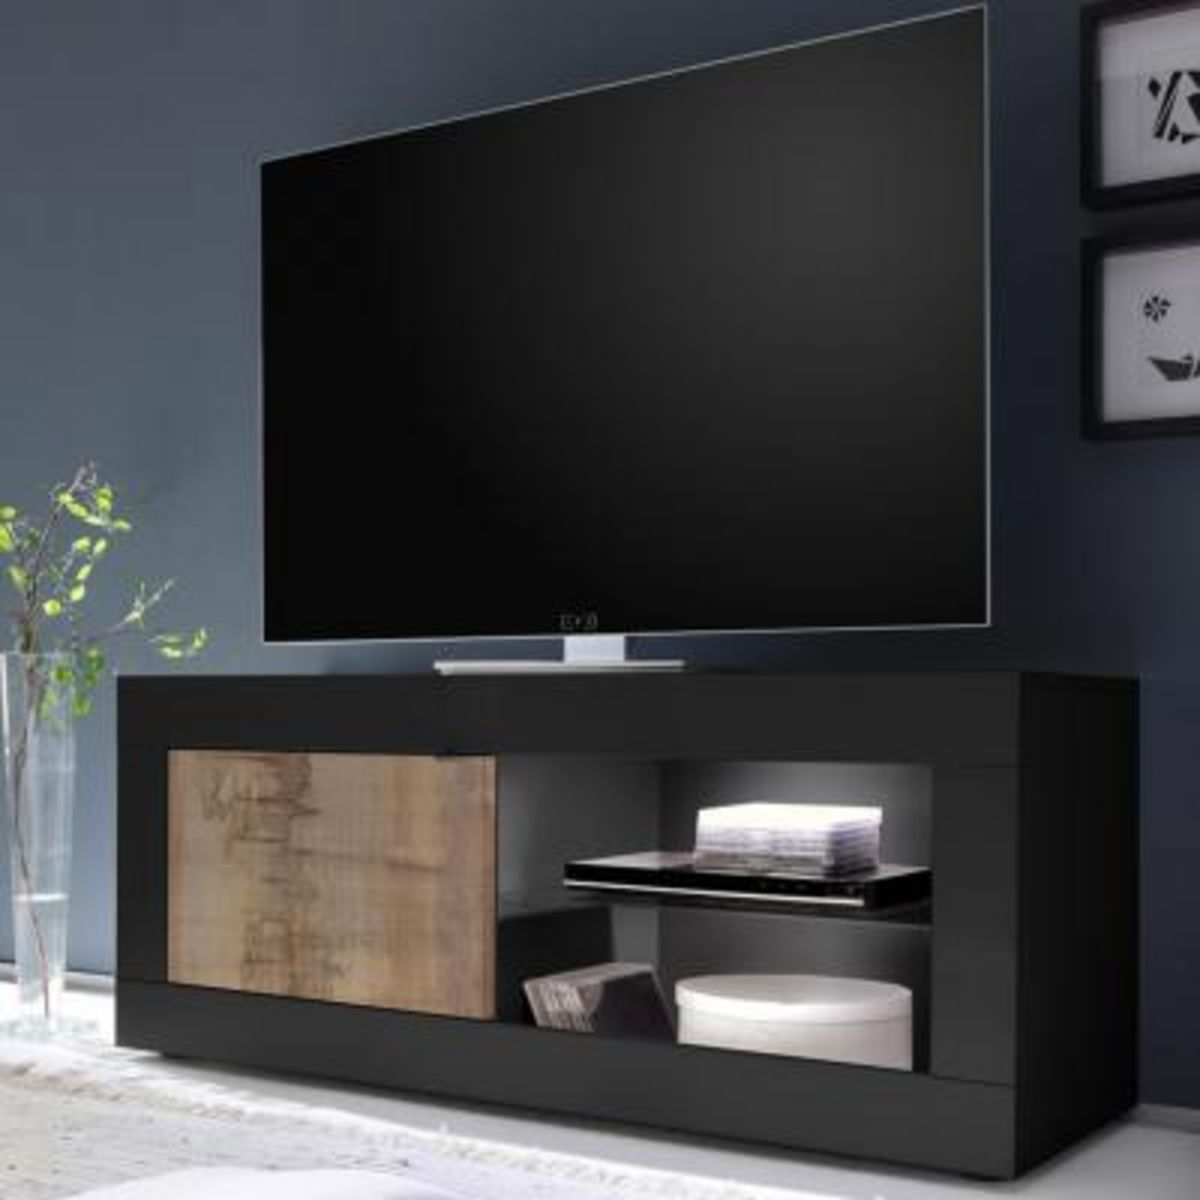 KASALINEA Banc TV moderne couleur bois et noir ARIEL 5-L 140 x P 43 x H 56 cm- Noir